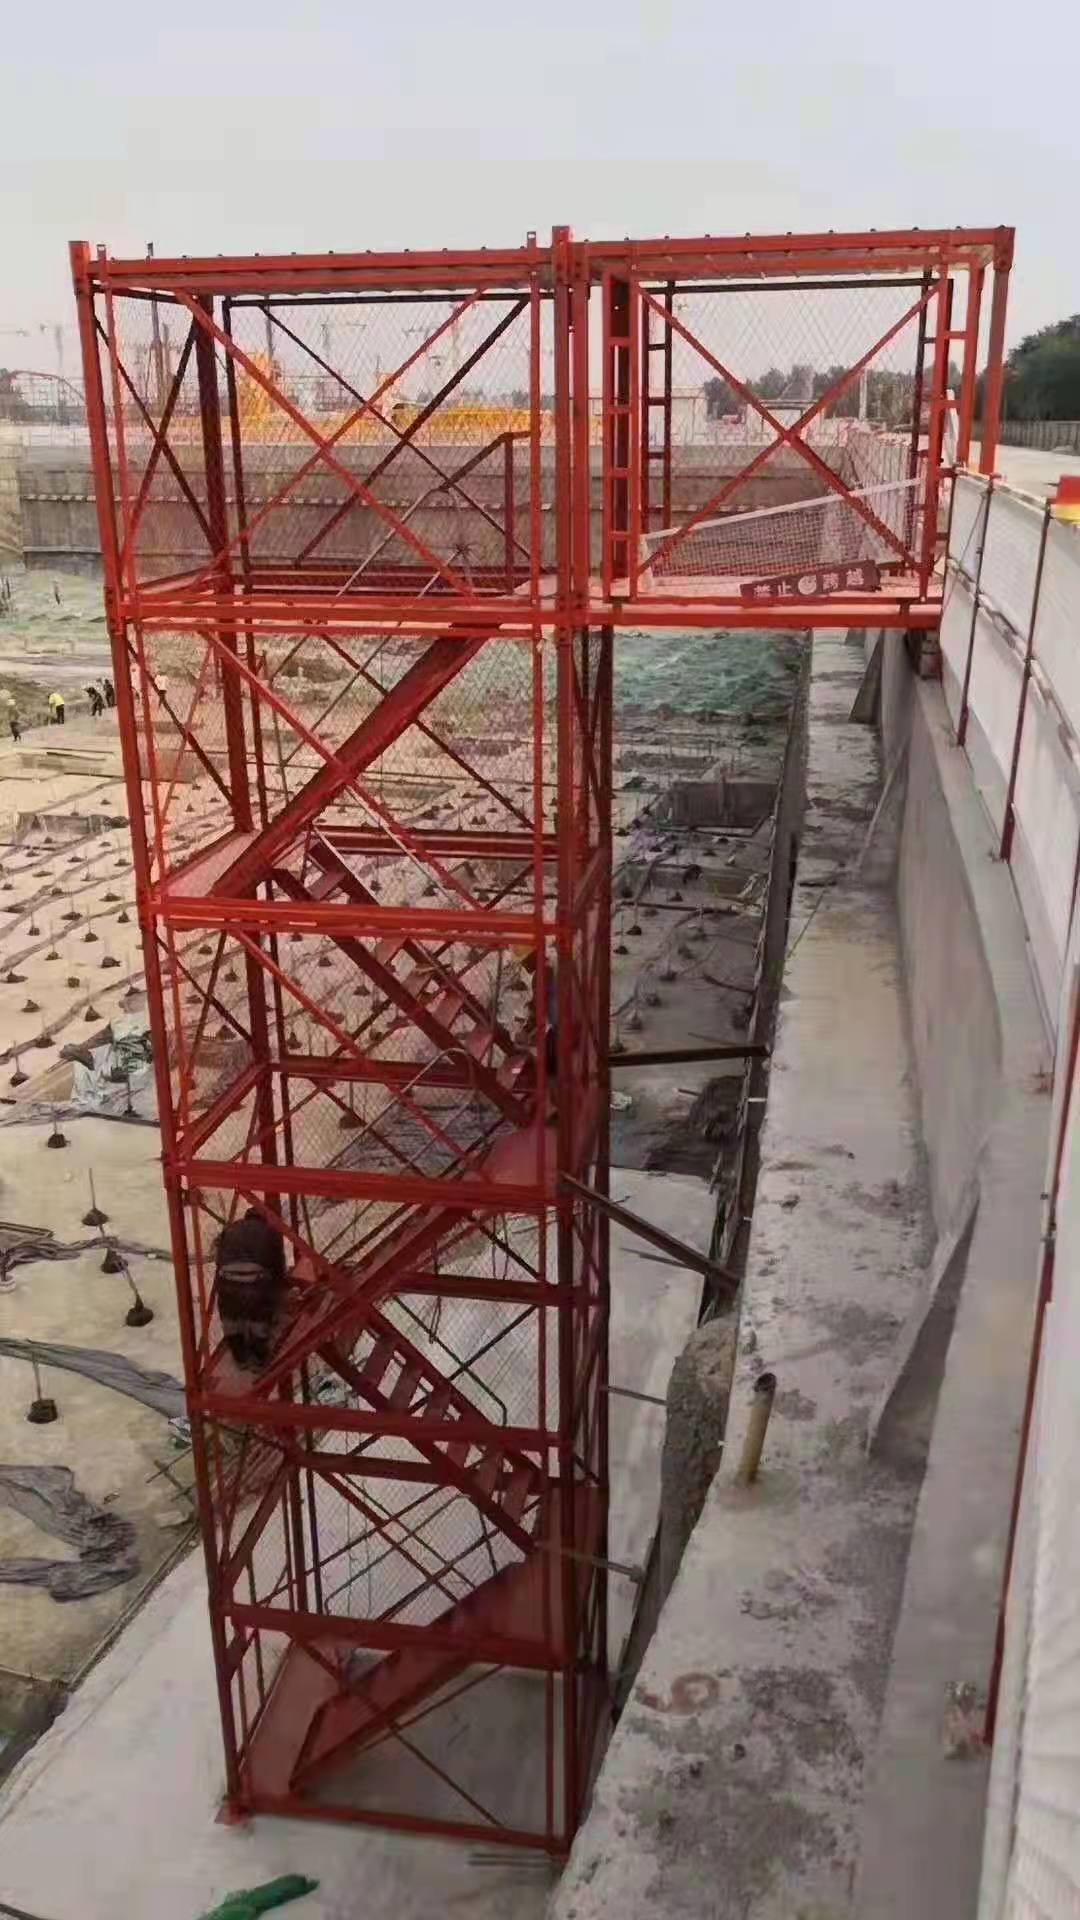 框架式安全梯笼 路桥施工安全梯笼 河北箱式安全梯笼生产厂家4